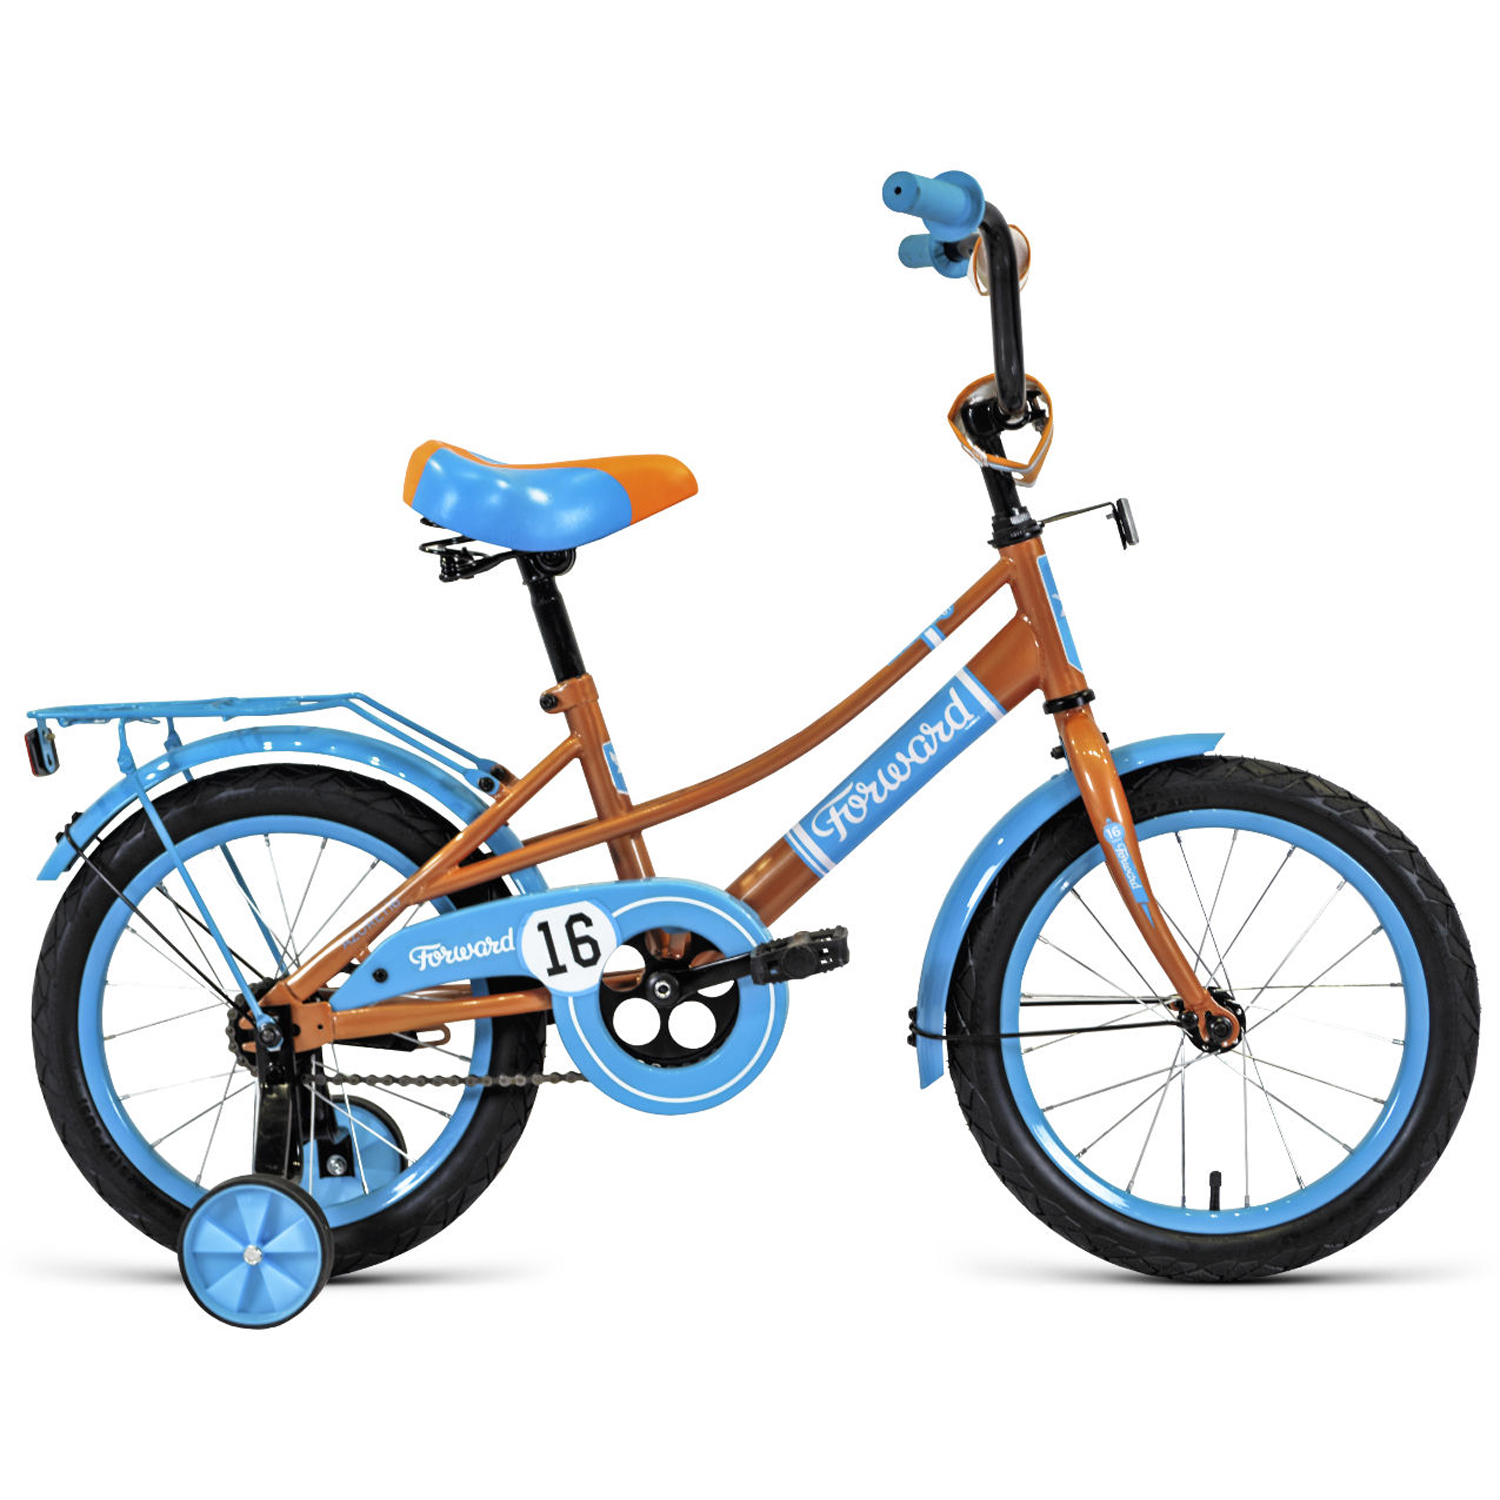 Двухколесный велосипед Forward Azure 16 2021, бежевый/голубой велосипед двухколесный forward barrio 16 2021